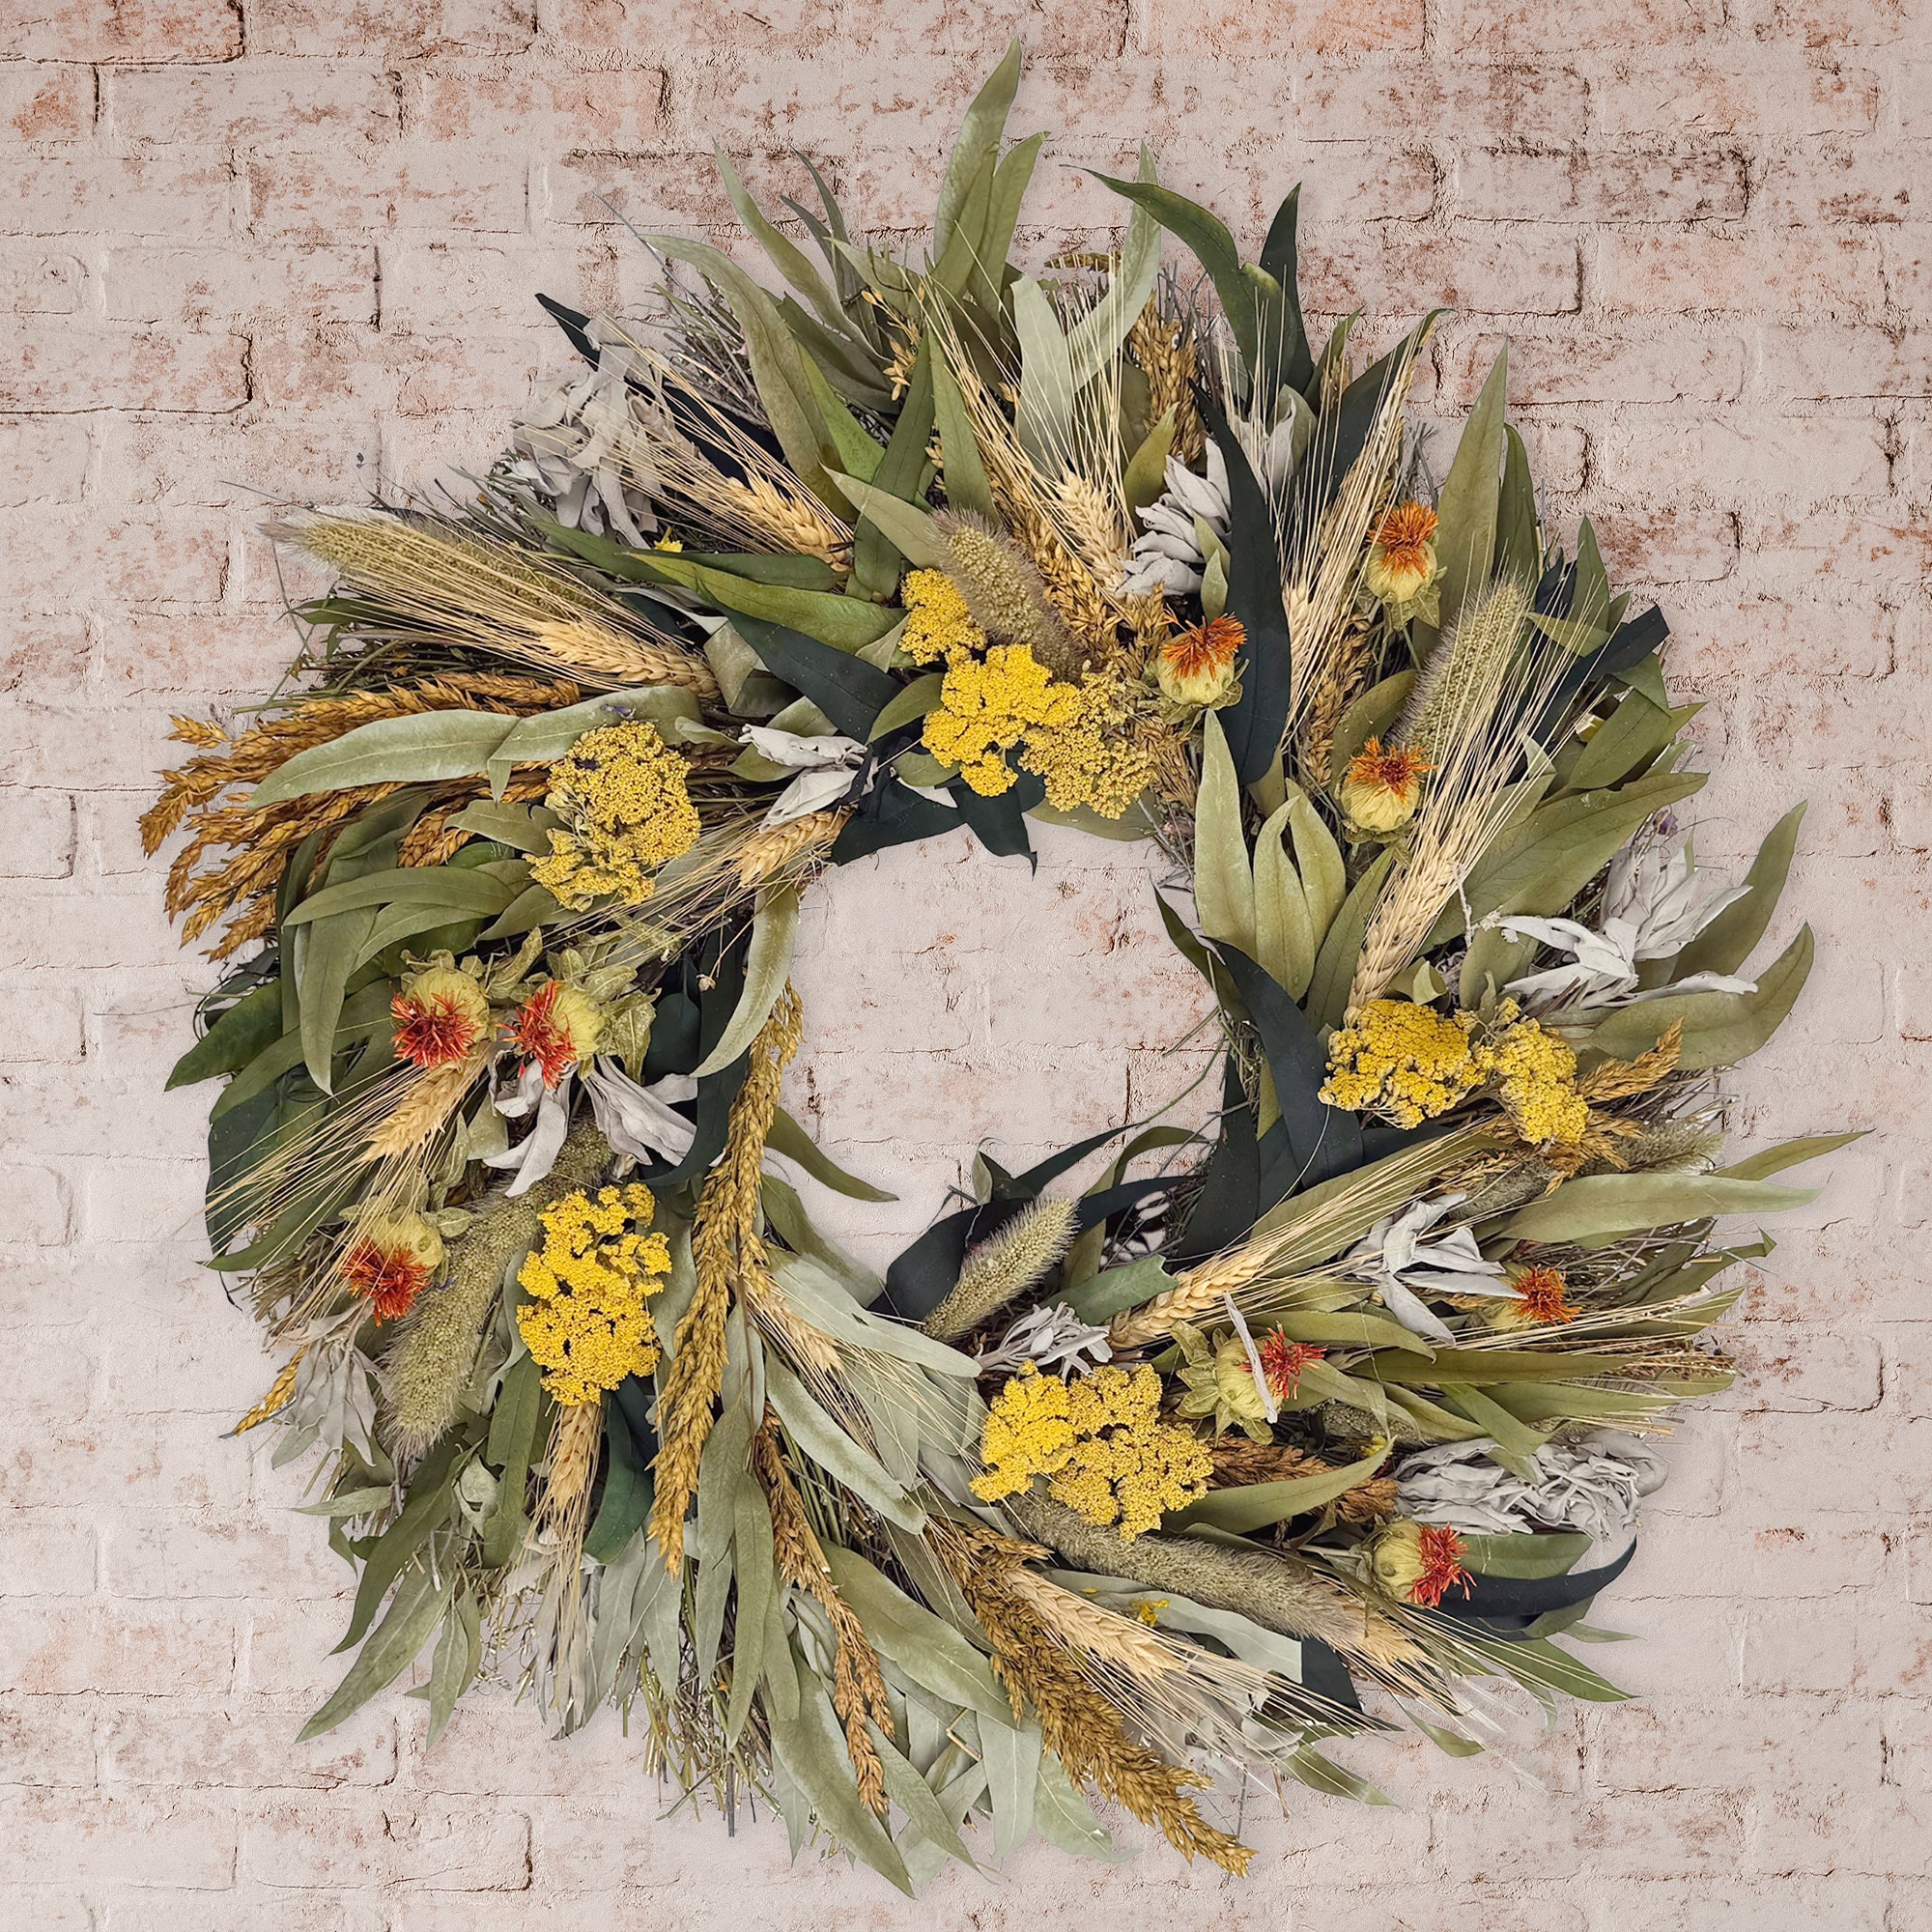 Yarrow & Sage Wreath against whitewashed background